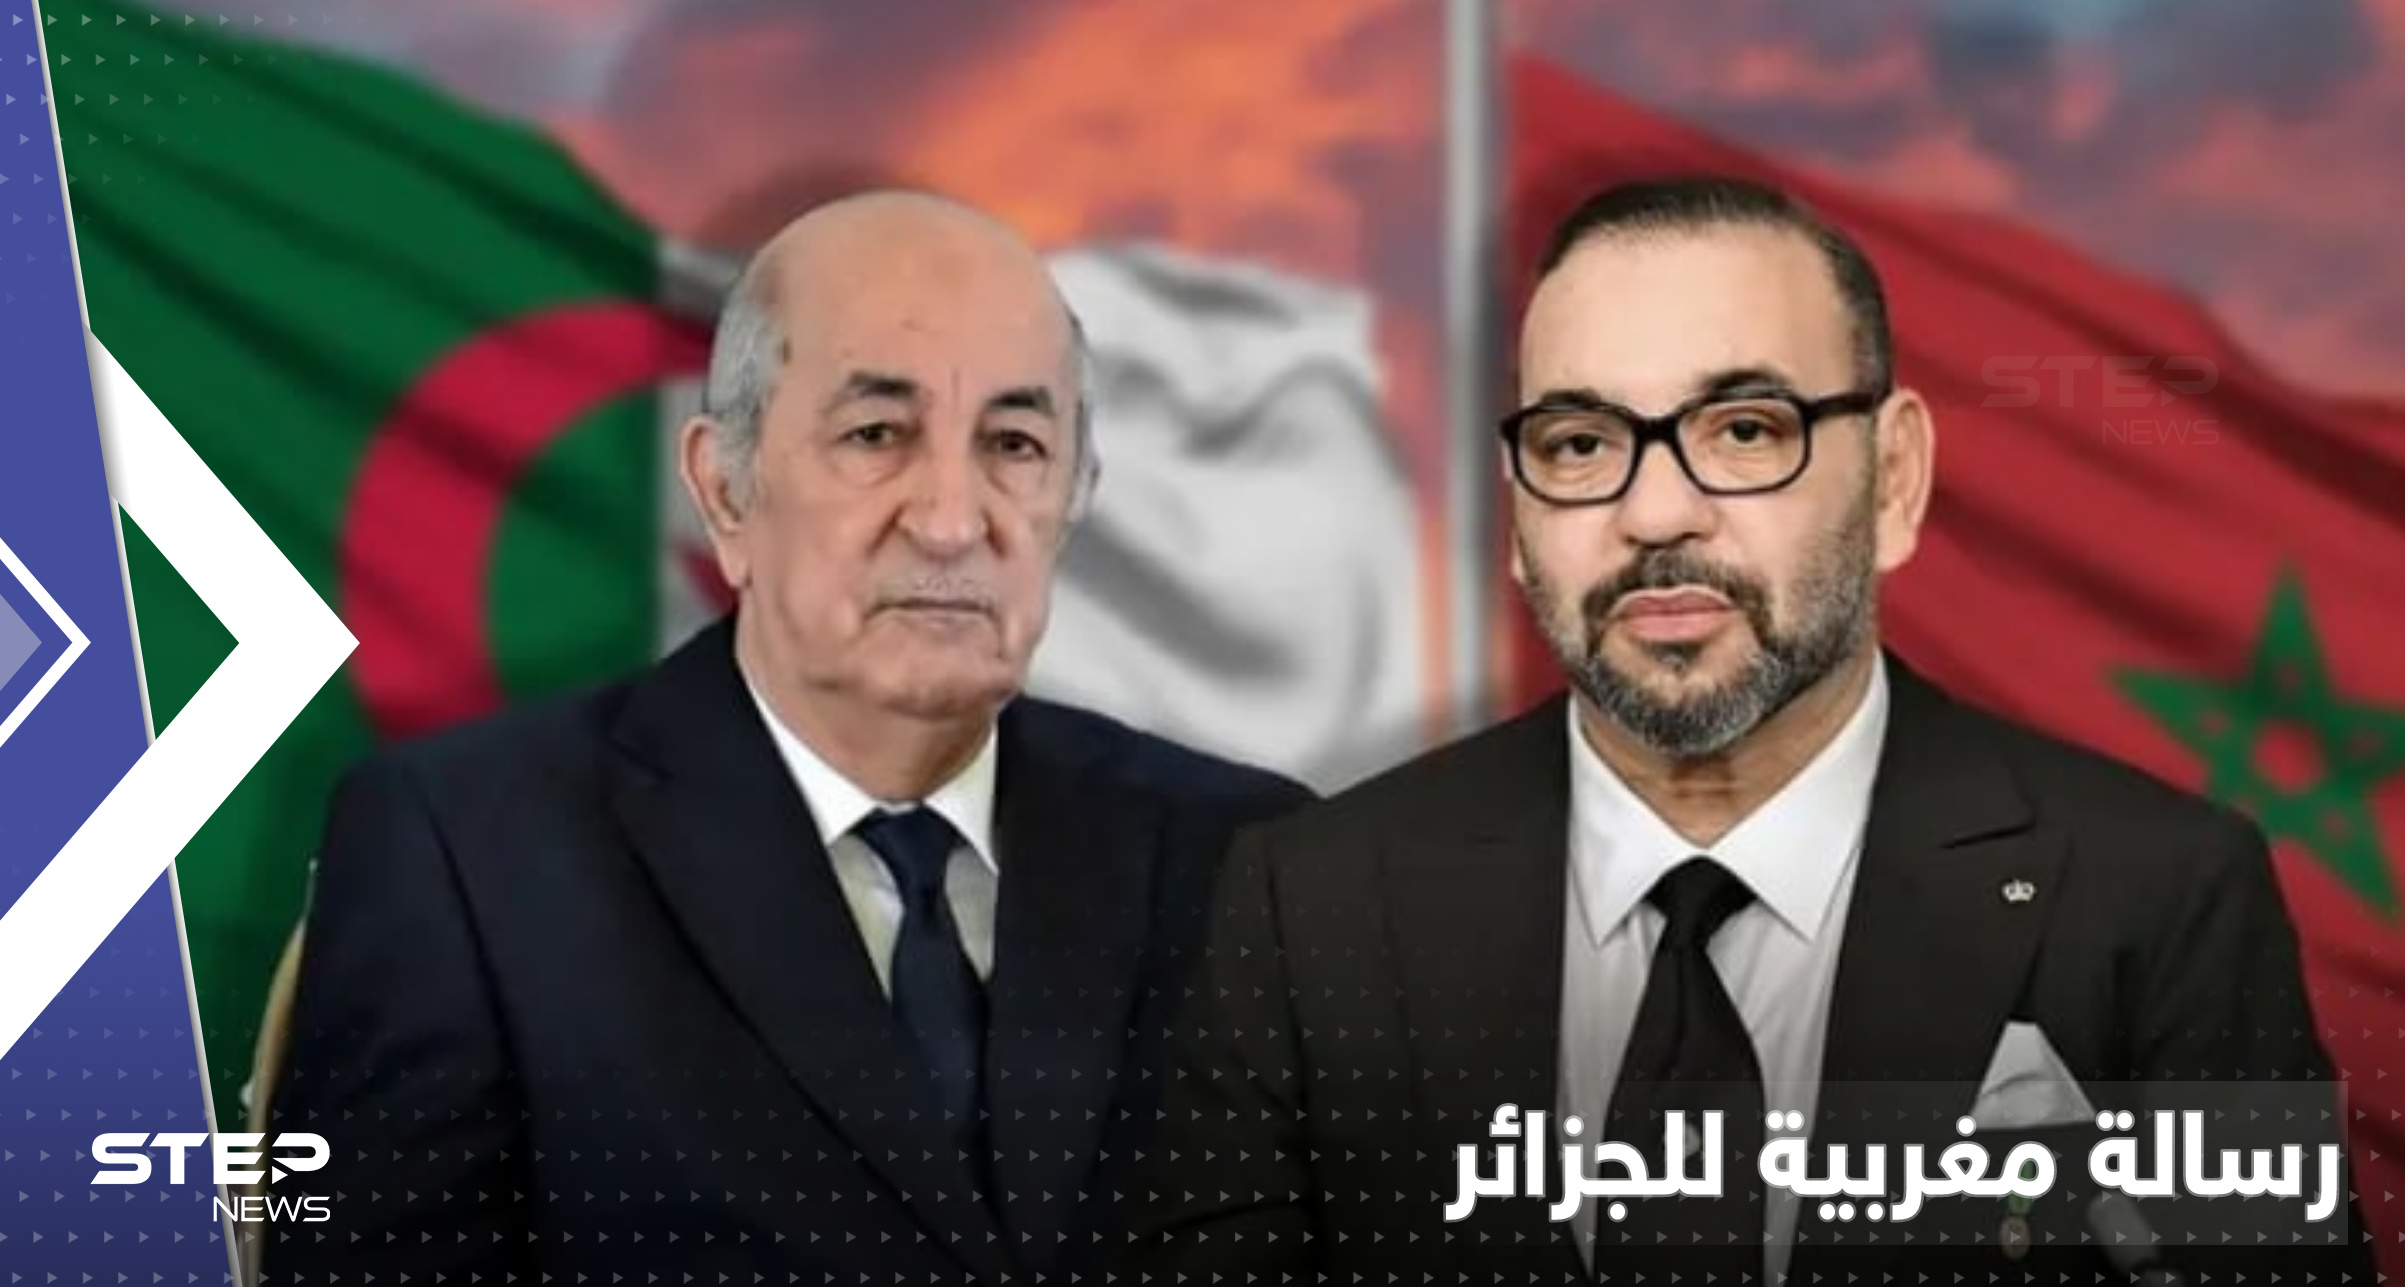 الملك المغربي تراجع عن حضور القمة العربية باللحظة الأخيرة ويبعث رسالة لرئيس الجزائر 